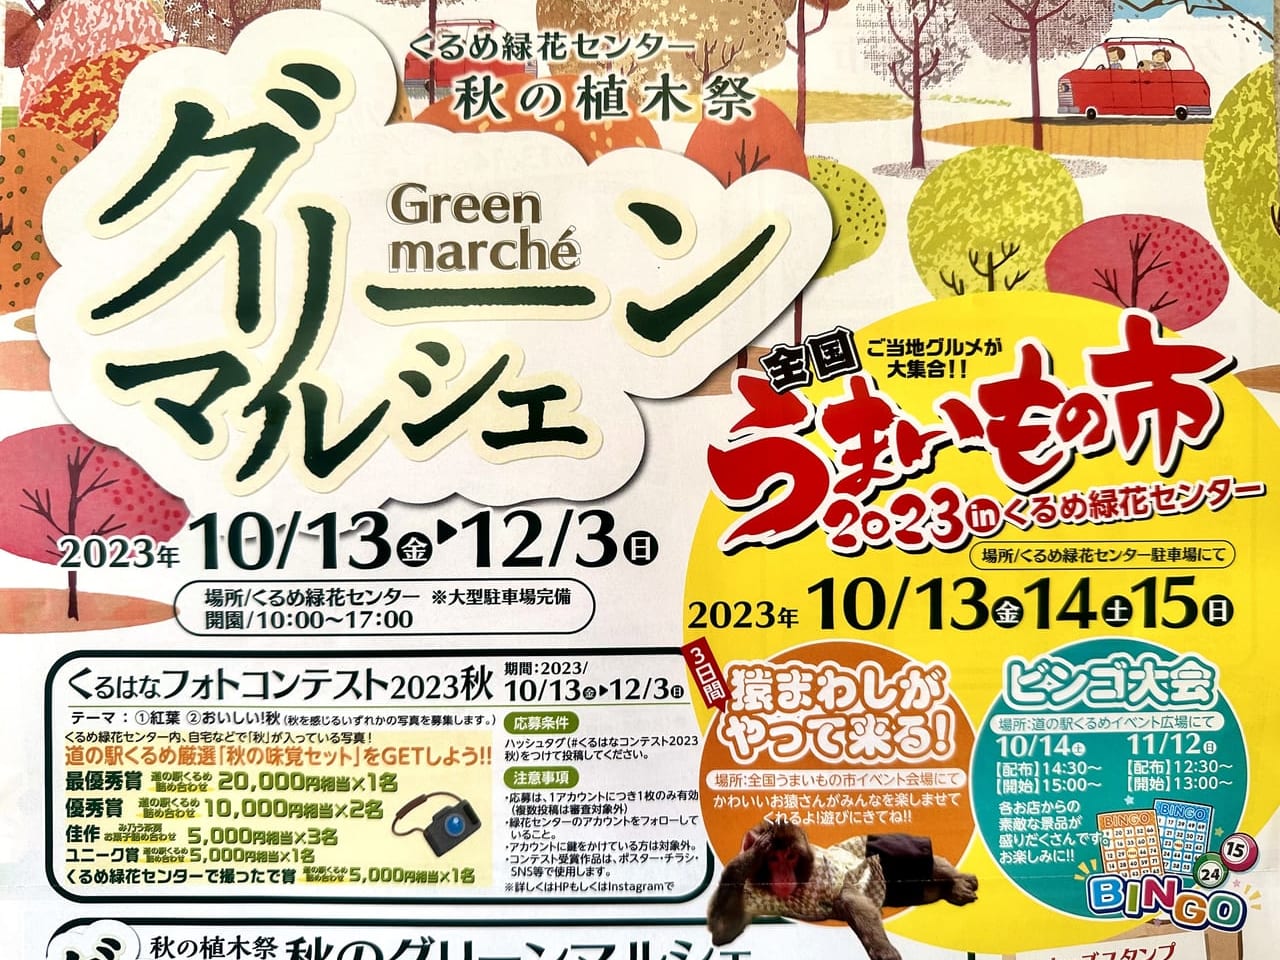 2023年秋の植木祭「グリーンマルシェ」